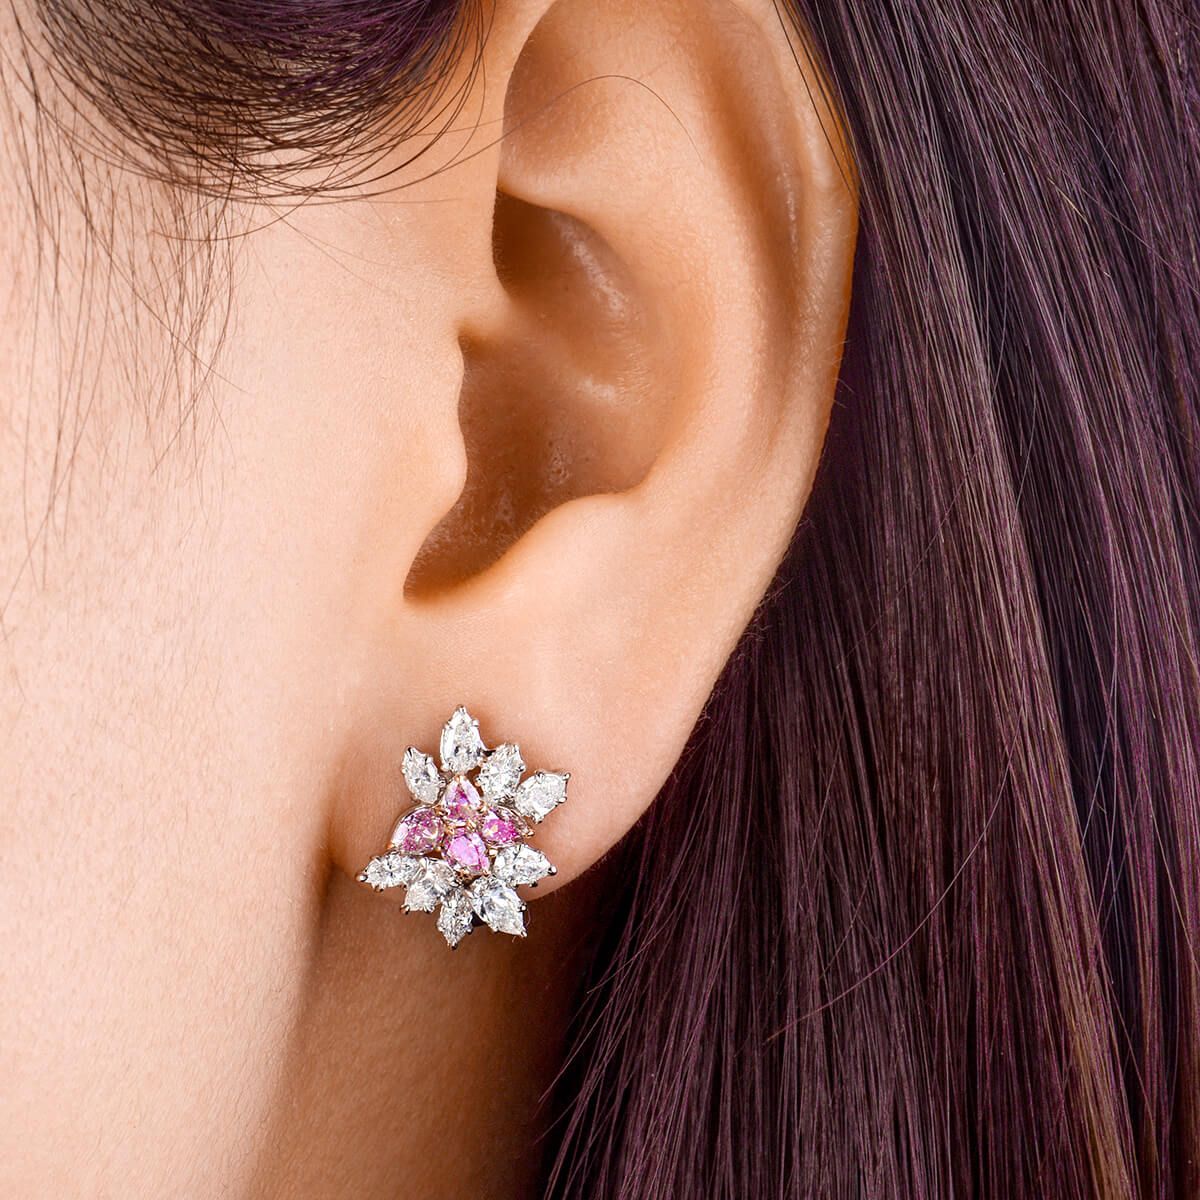 Fancy Pink Diamond Earrings, 0.88 Ct. (2.20 Ct. TW), Pear shape, EG_Lab Certified, J5826065537